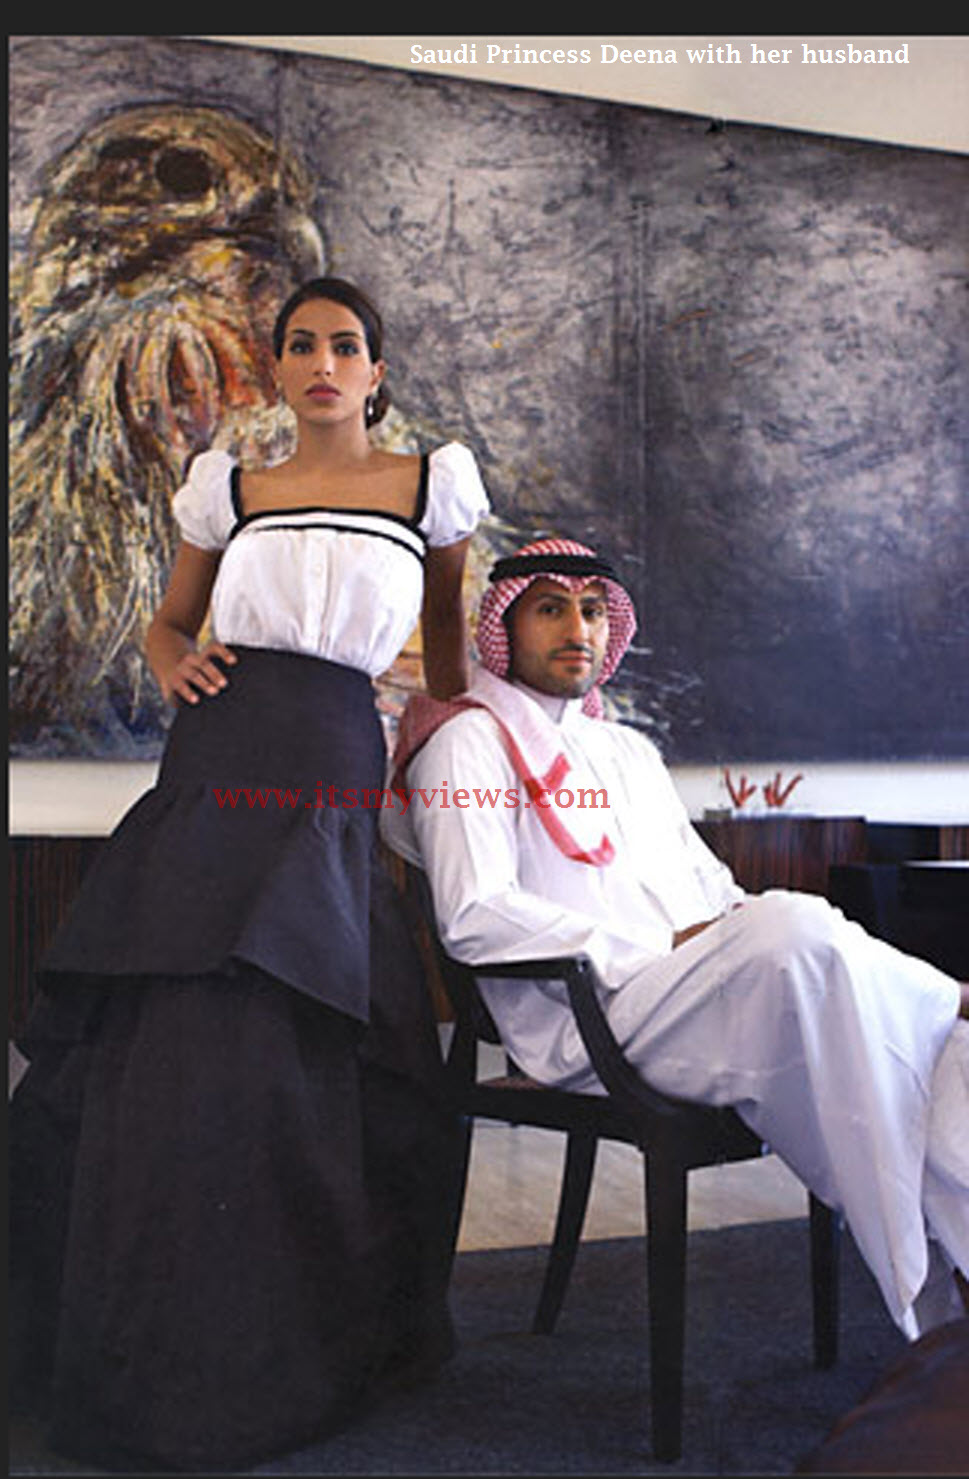 Mengintip Kehidupan Pangeran dan Putri Kerajaan Arab Saudi